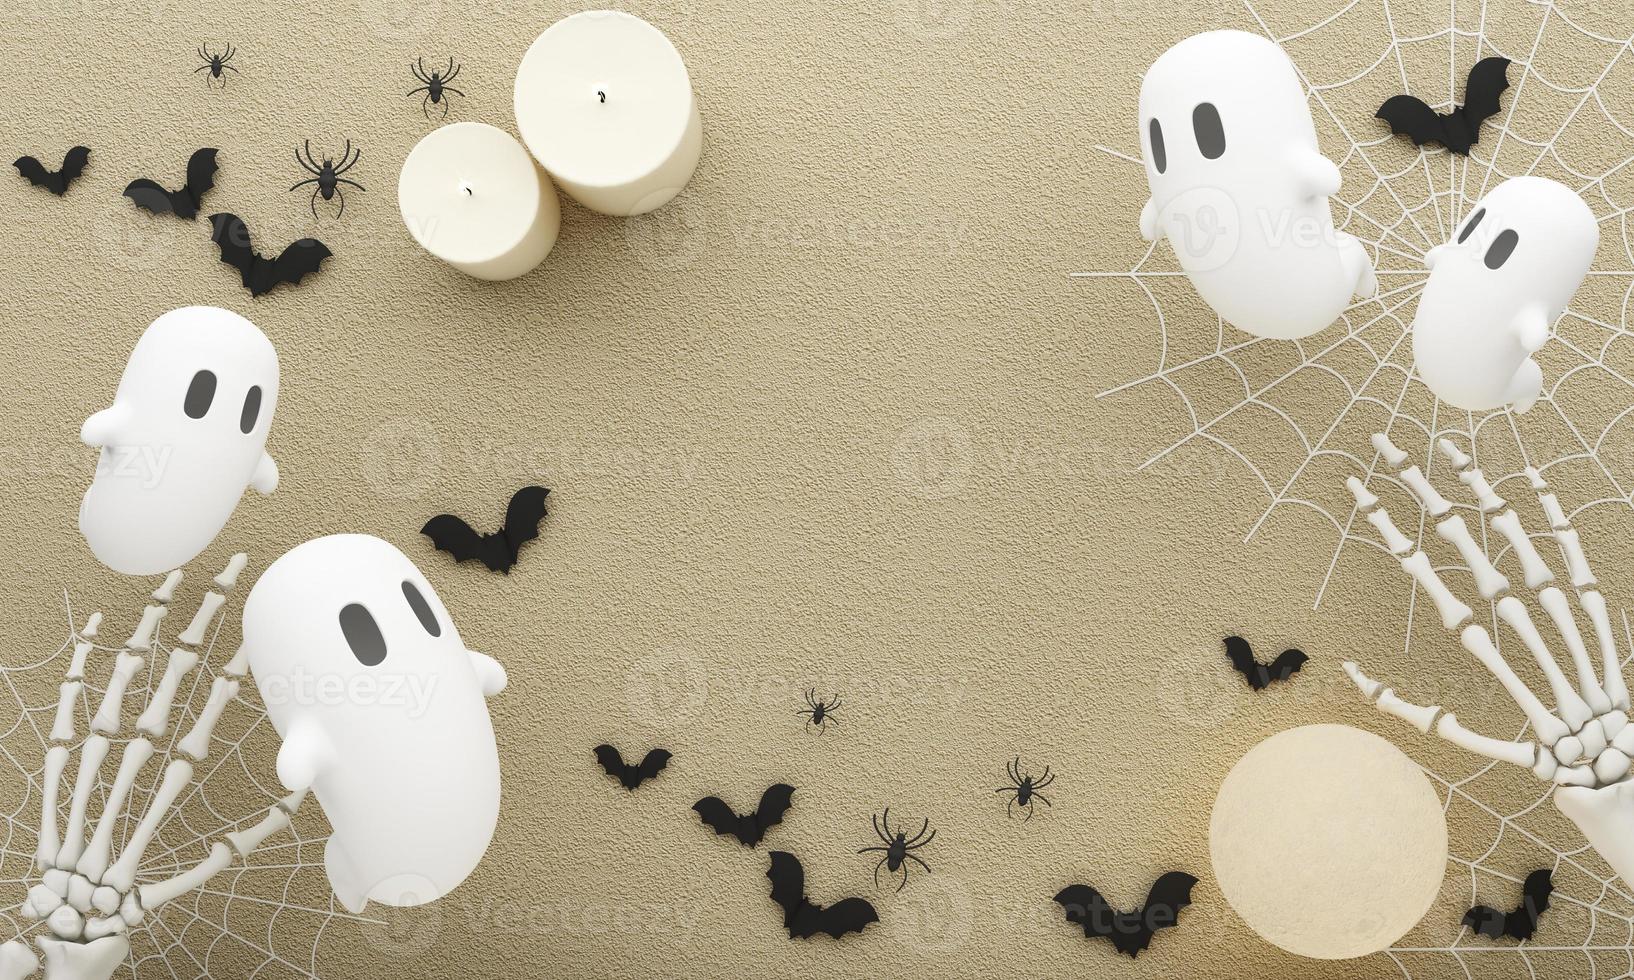 cartazes de festa de halloween feliz com morcego de teia de aranha com abóboras na ilustração dos desenhos animados. lua cheia e fantasma de vaia com mão humana e esqueleto de cabeça. fundo de vista superior de textura de concreto. renderização em 3D foto